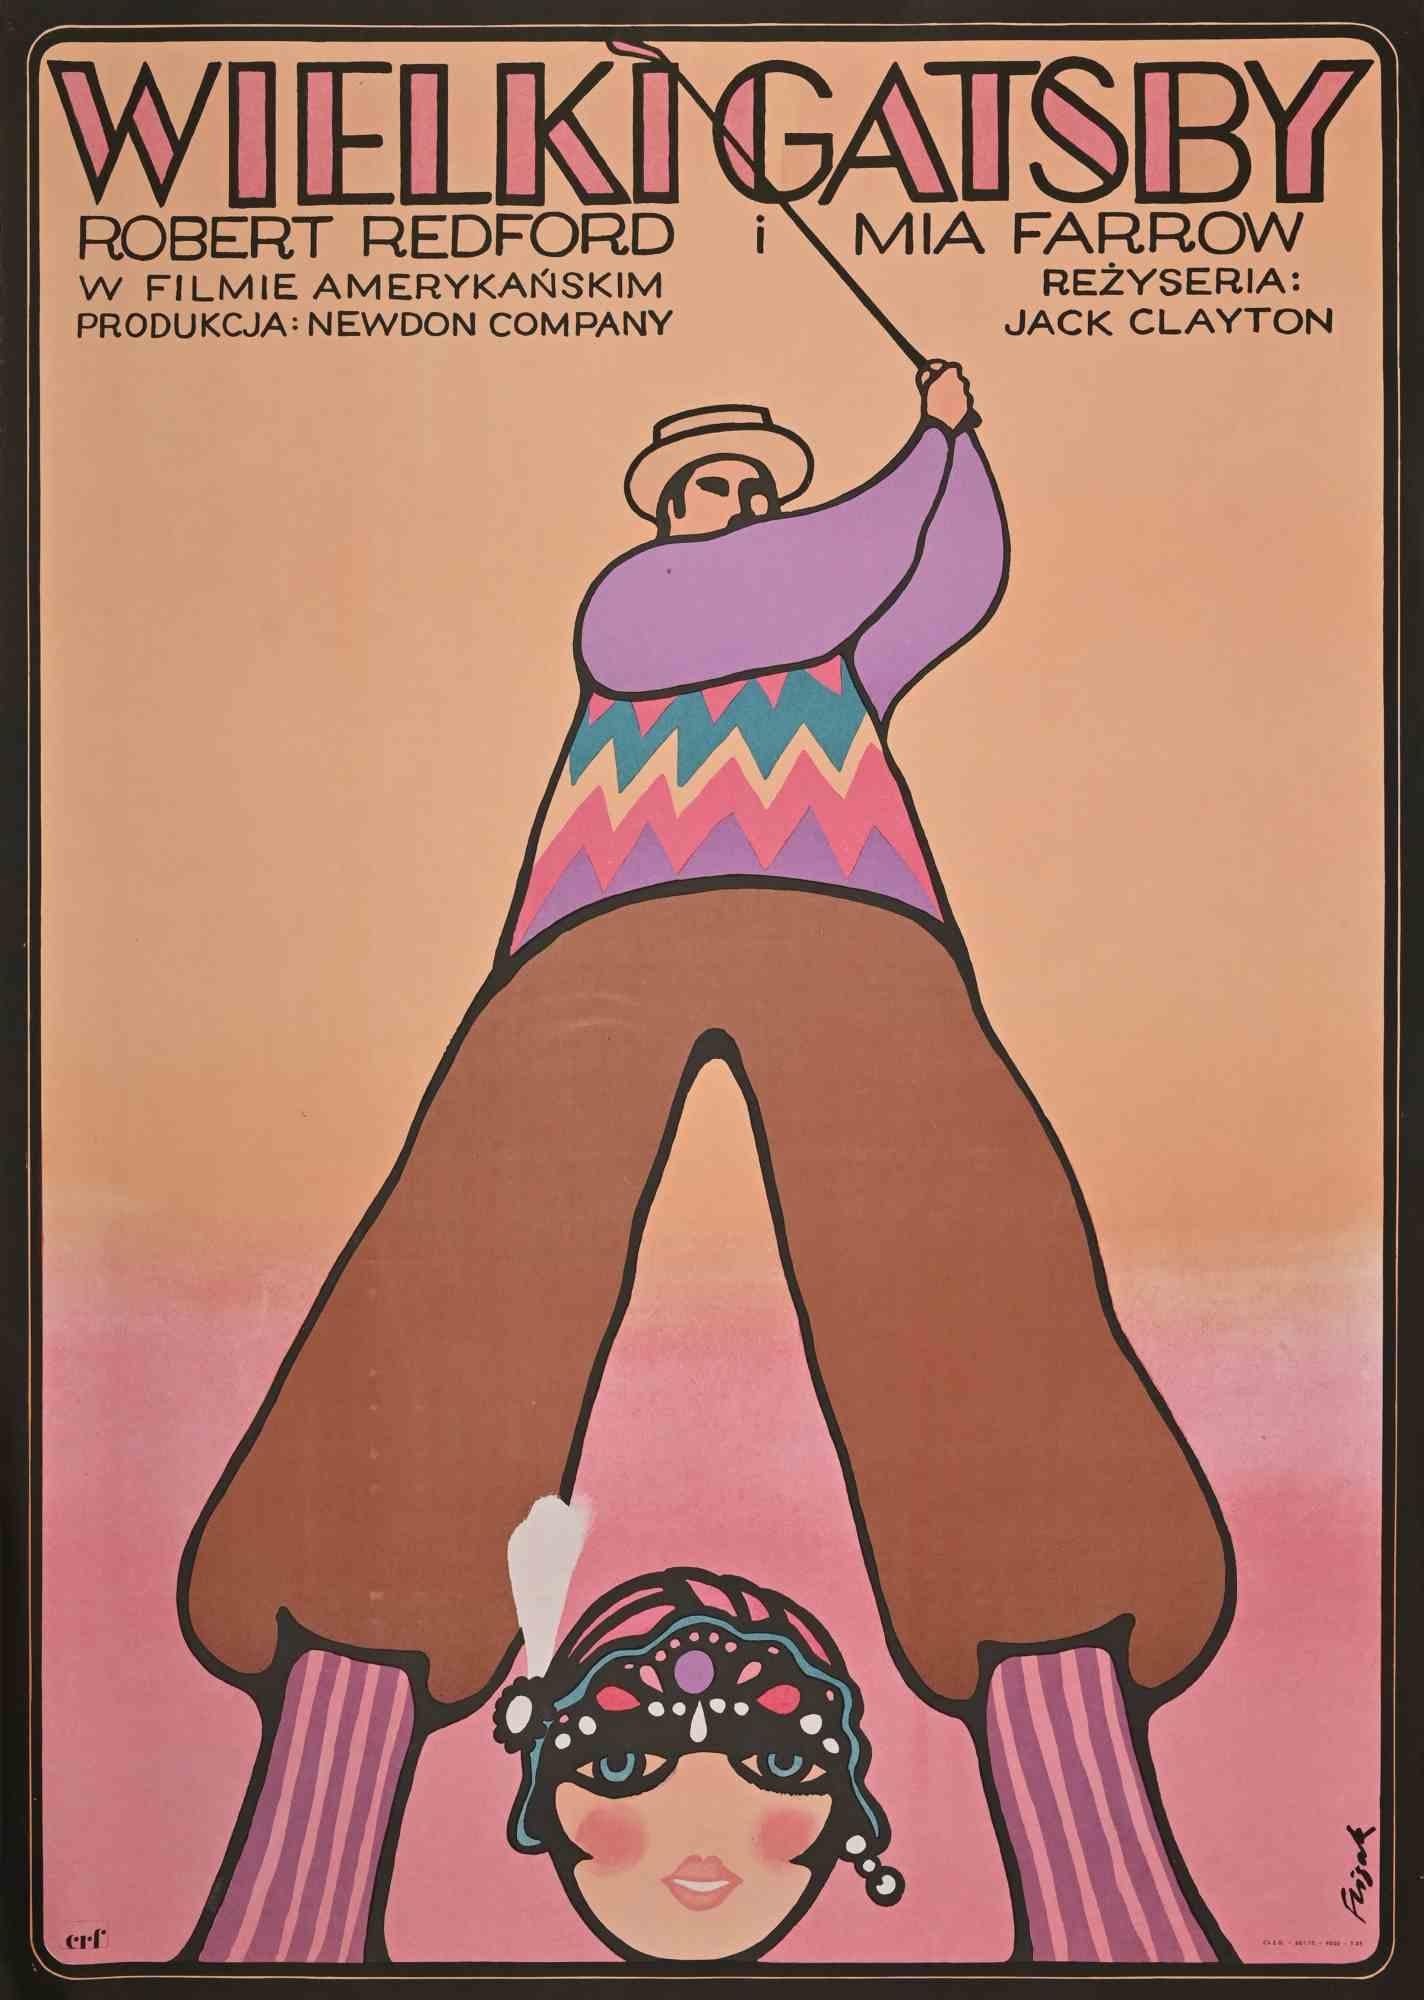 Manifesto Cinema - The Great Gatsby est une affiche vintage sur papier réalisée par  Jerzy Flisak (Varsavia, 1930 - 2008)  en 1975. 

Lithographie originale en couleur. Signé à la main.

Bon état avec de légers plis.

Jerzy Flisak  (Varsavia, 1930 -